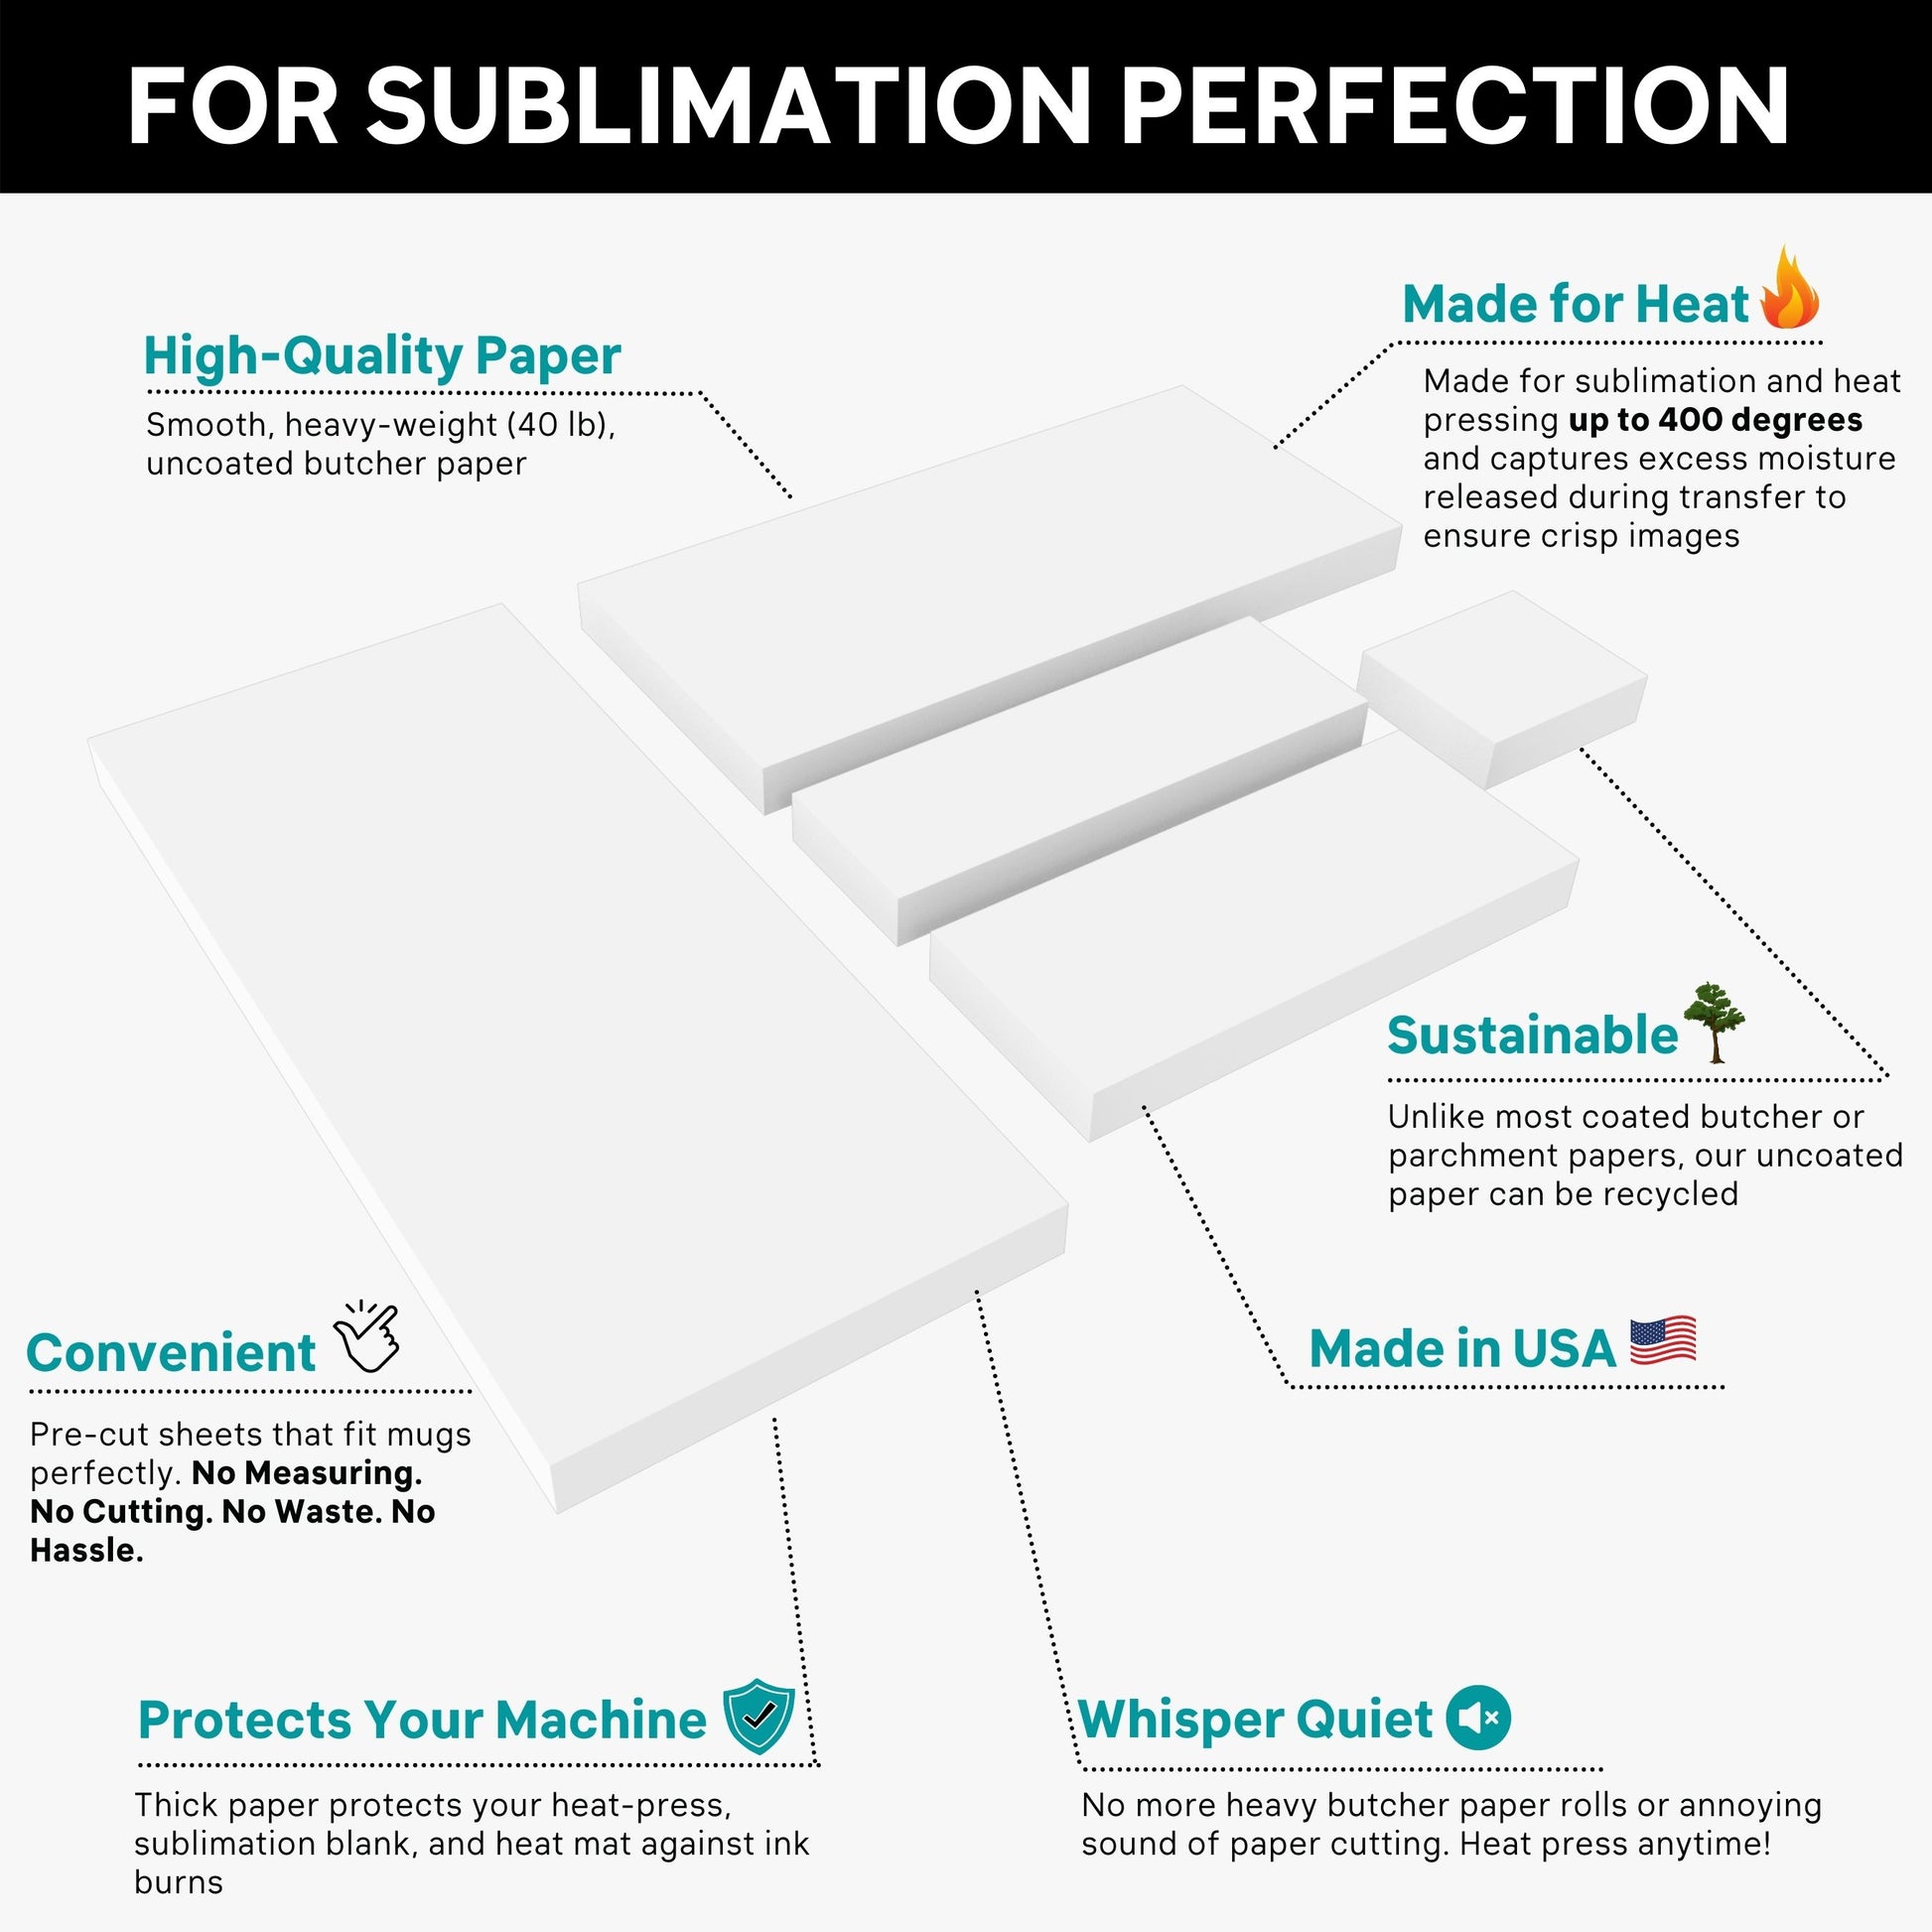 Precut Butcher Paper for Sublimation / Heat Press Crafts - BakeSpace Shop